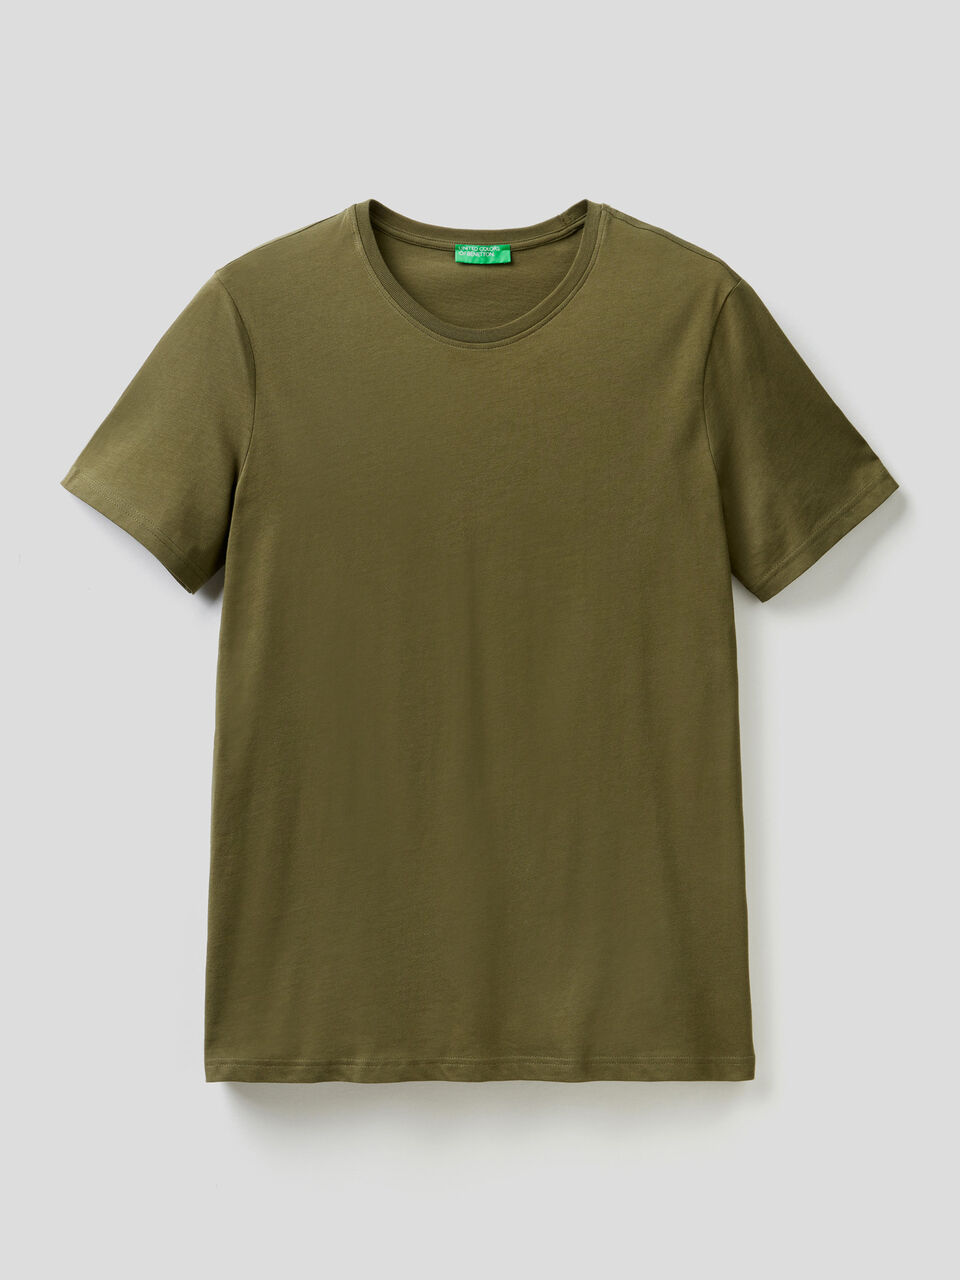 Camiseta verde militar - Militar